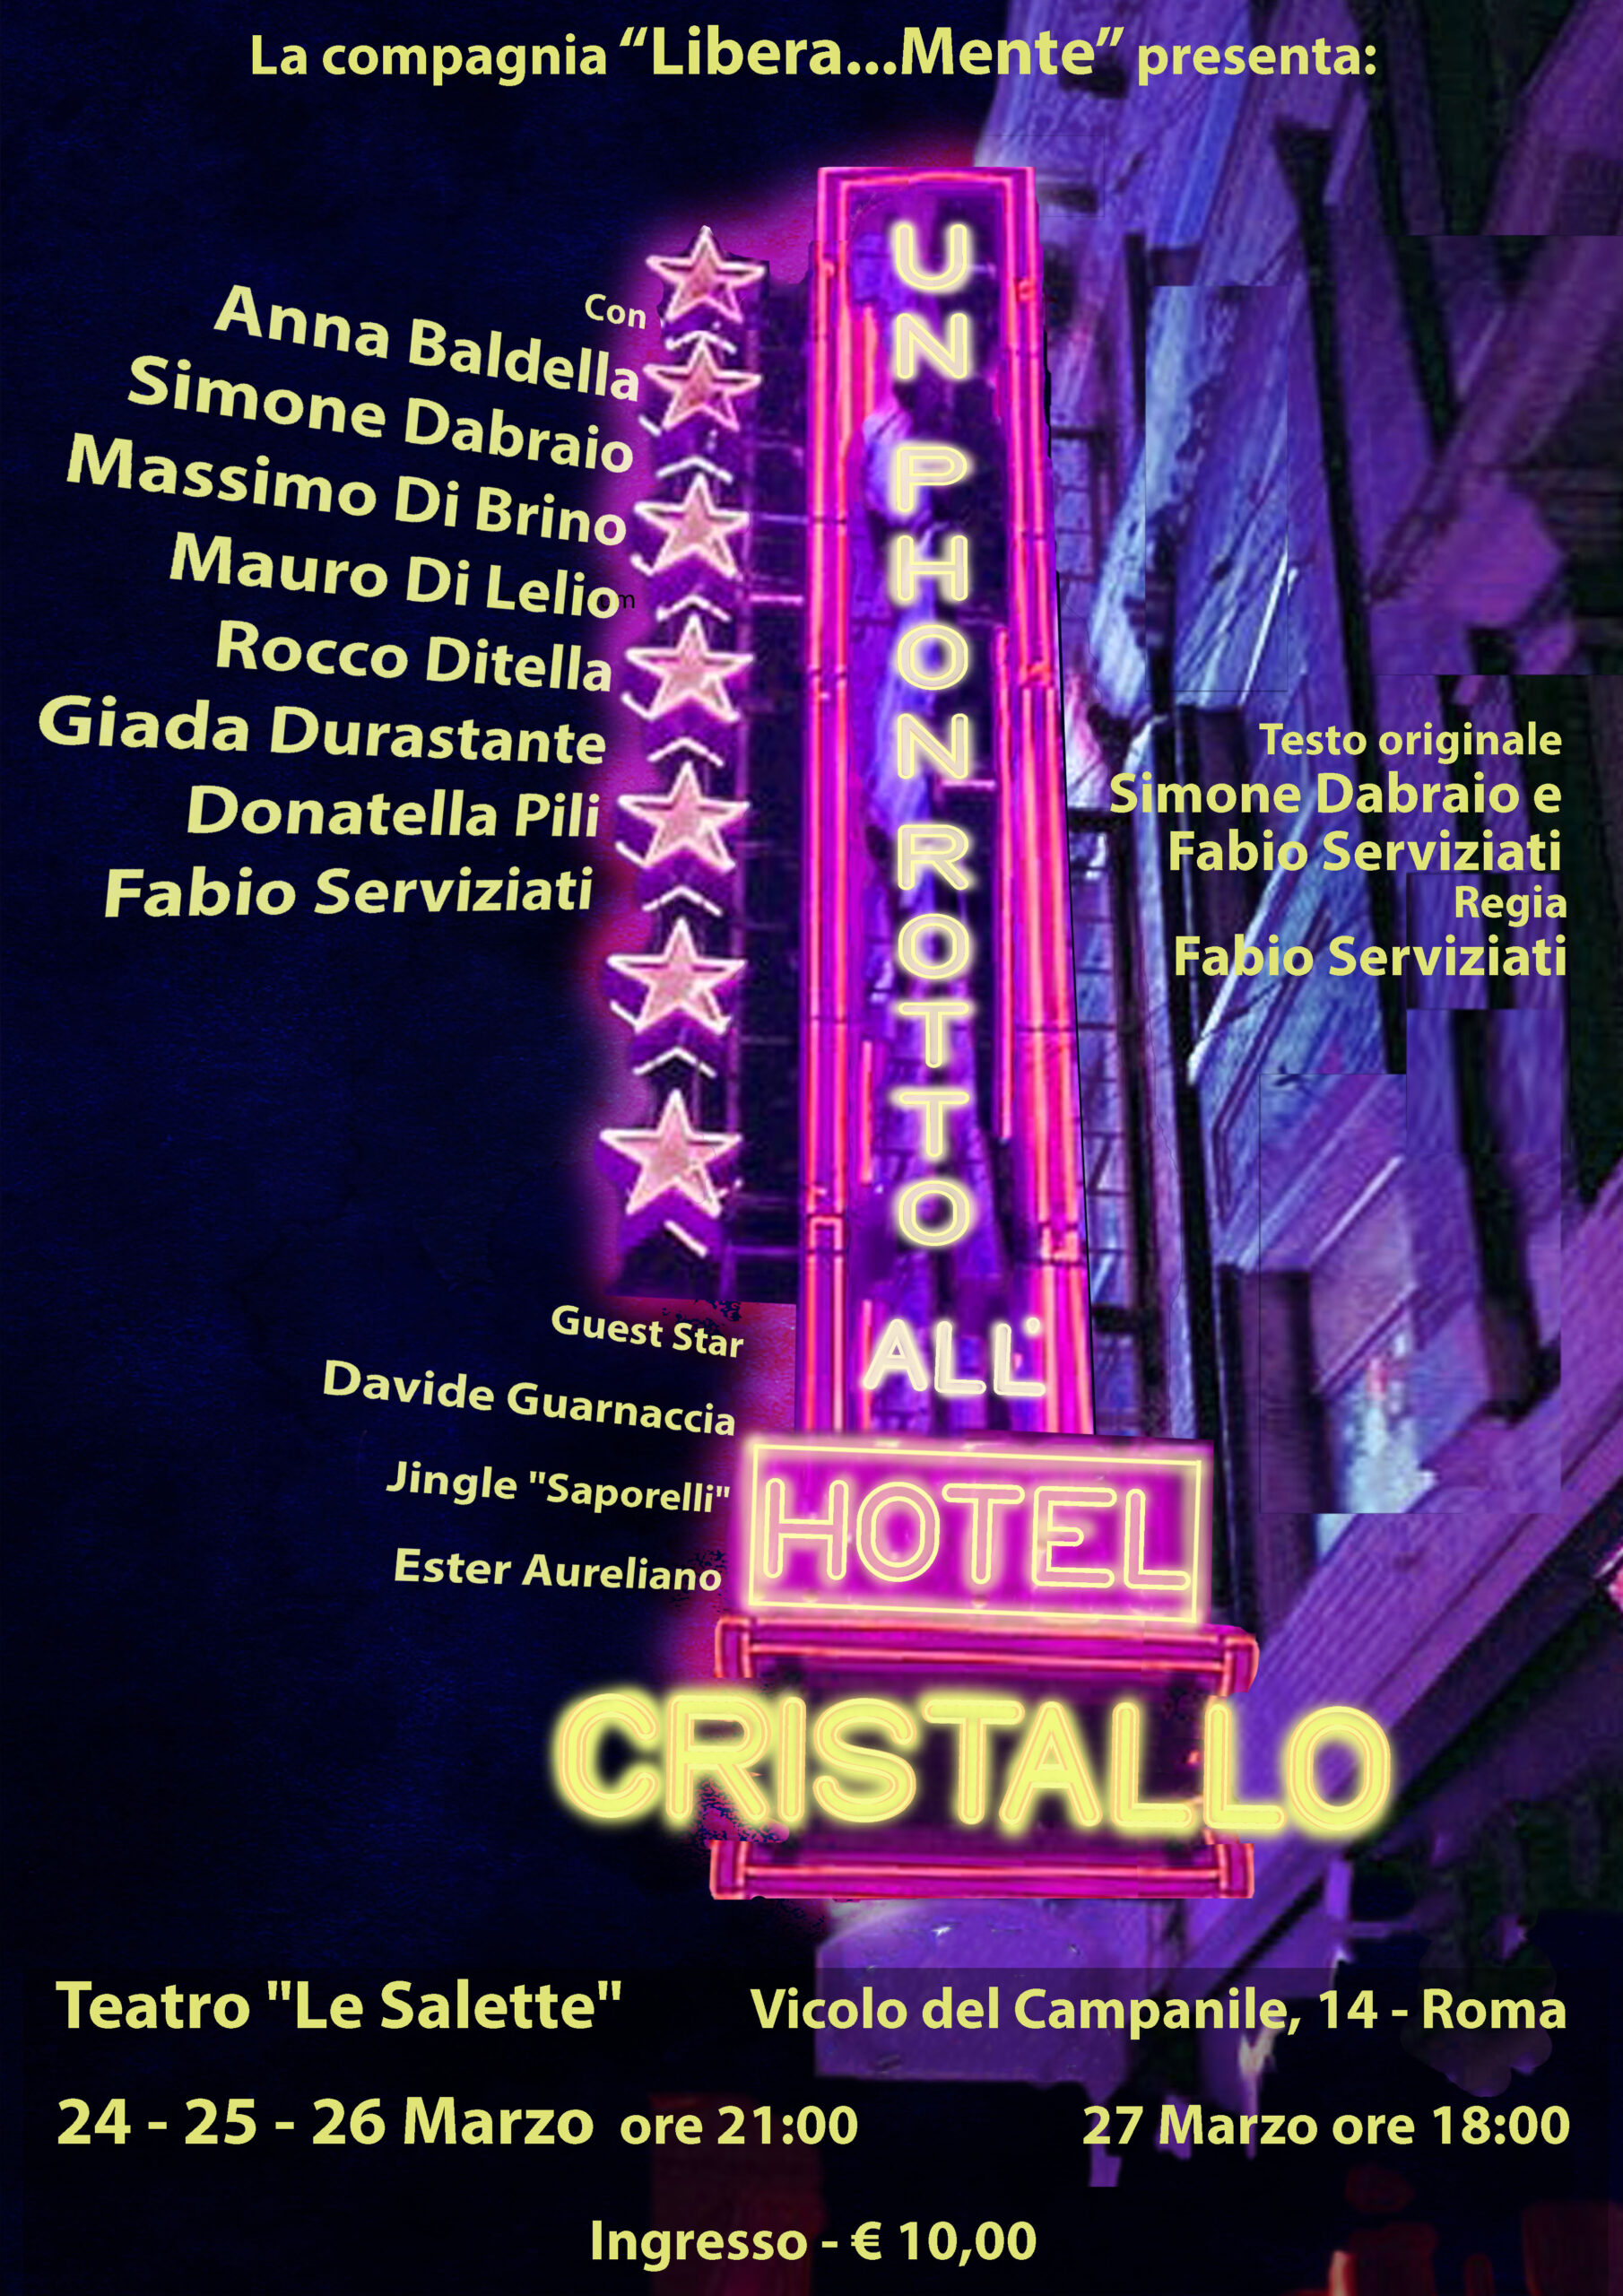 “Un Phon Rotto all’Hotel Cristallo”